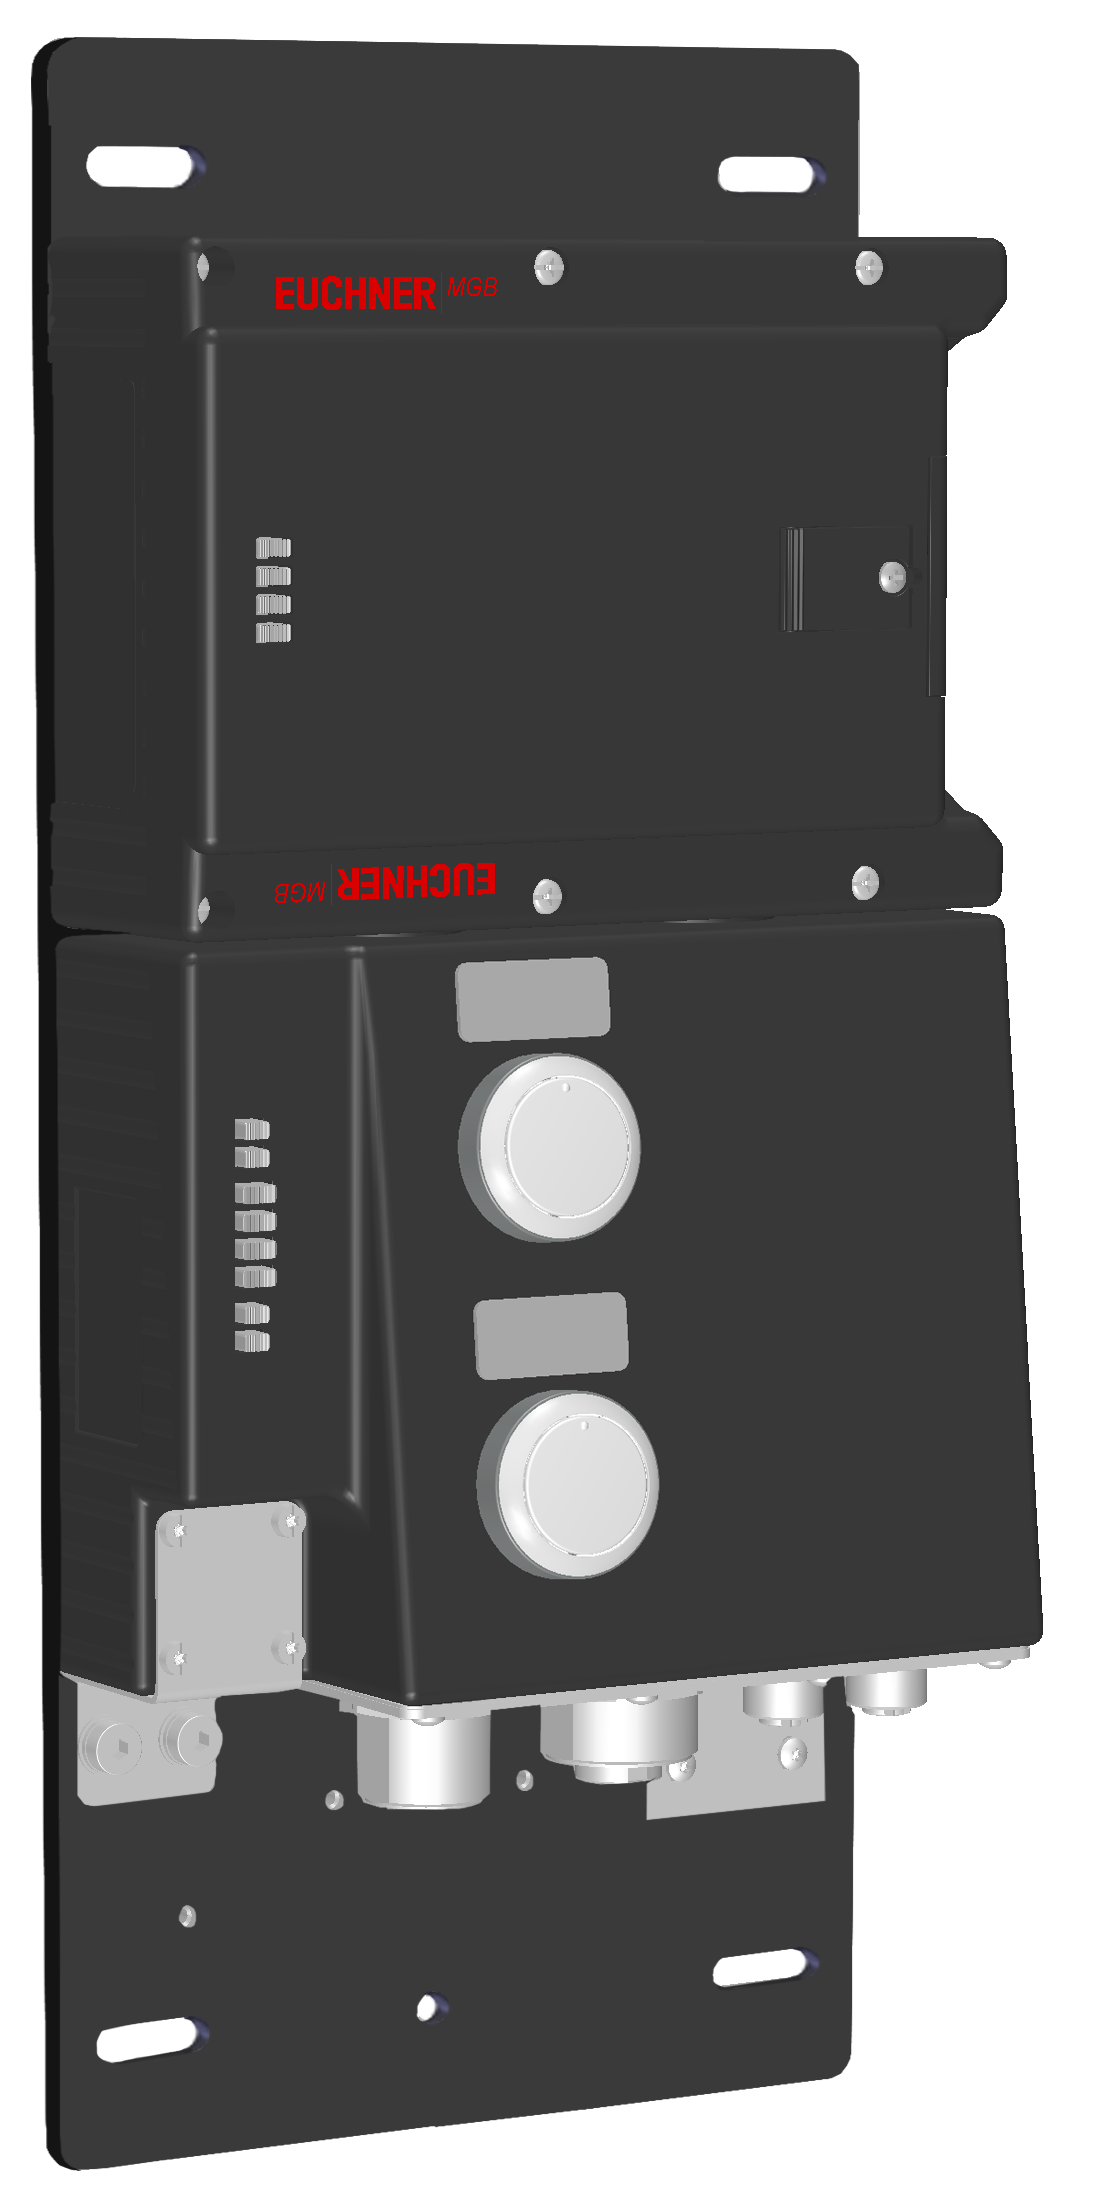 Vyhodnocovací moduly s jištěním ochranného krytu MGB-L2B-PNA-R-125575  (Obj. č. 125575)